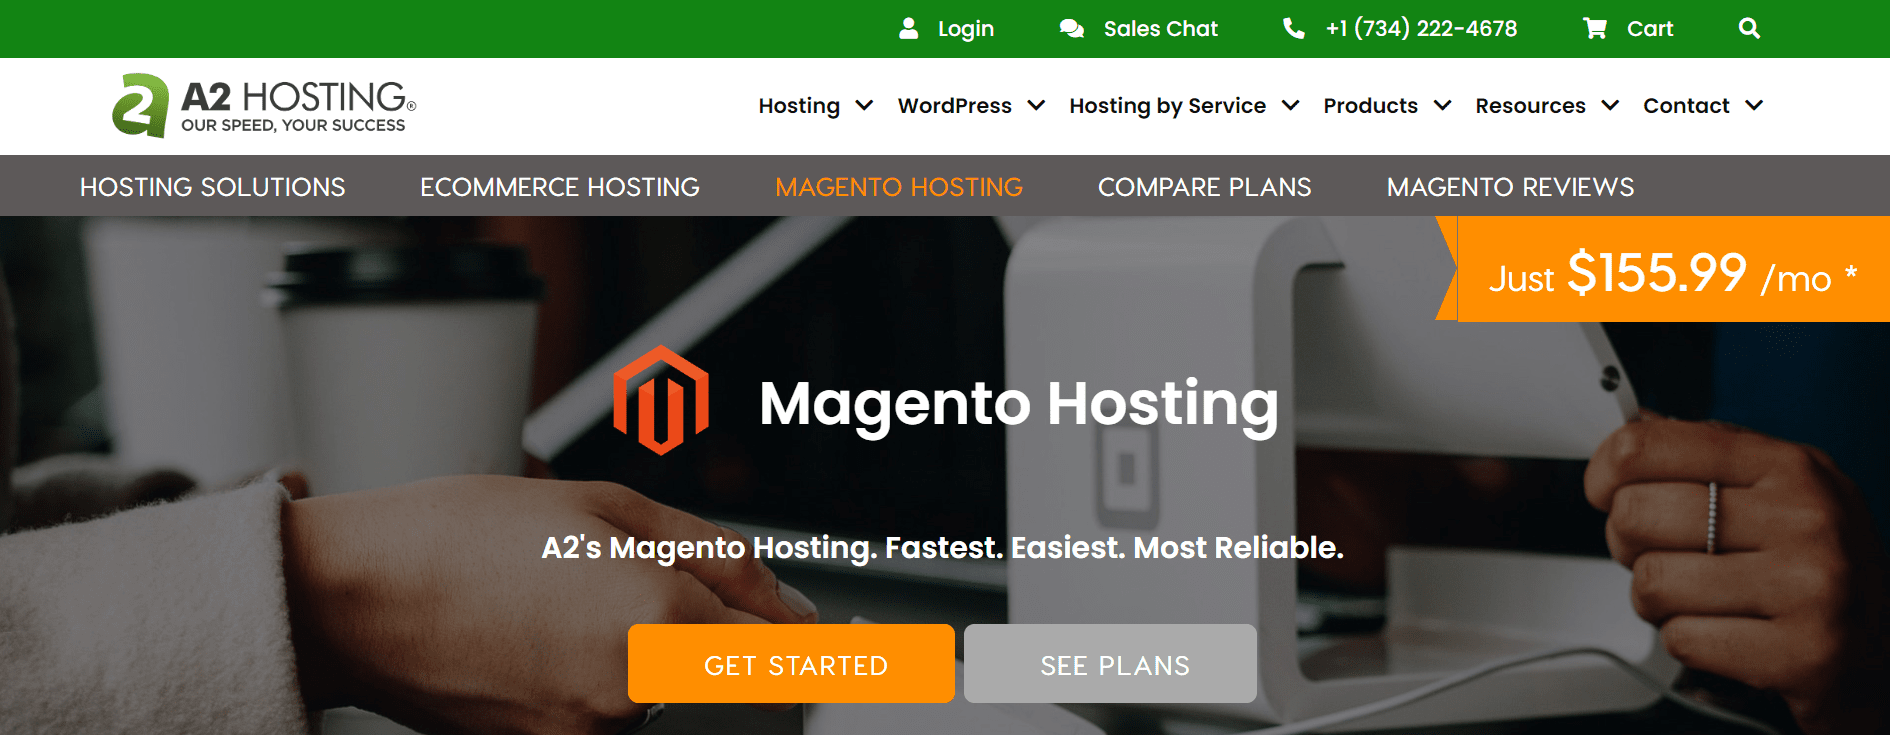 a2hosting fast magento hosting